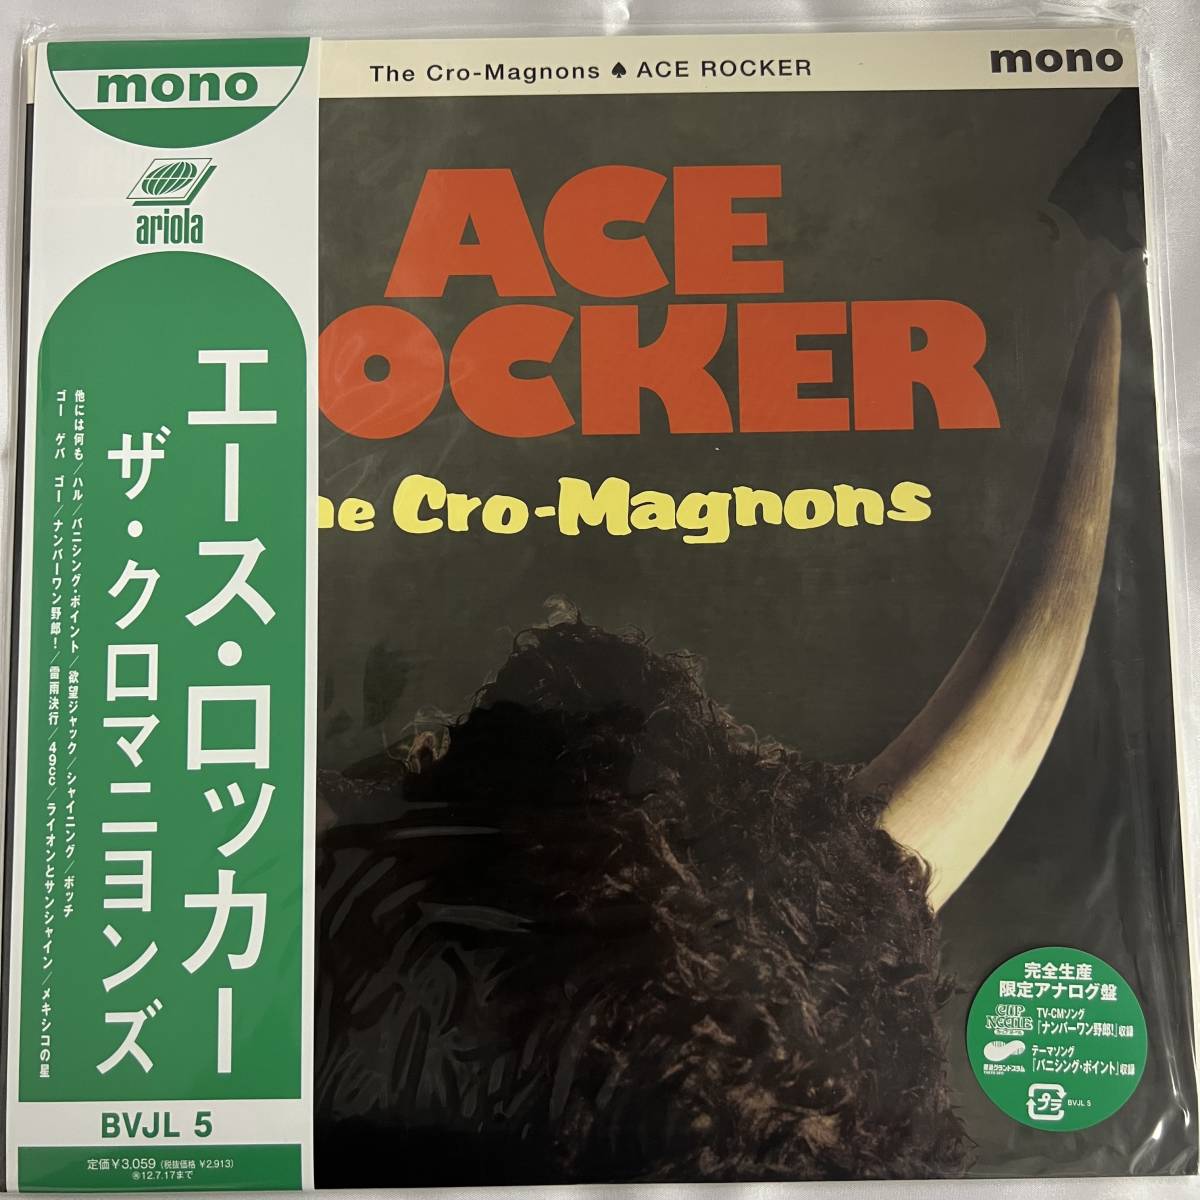 ザ・クロマニヨンズ / ACE ROCKER アナログレコード-